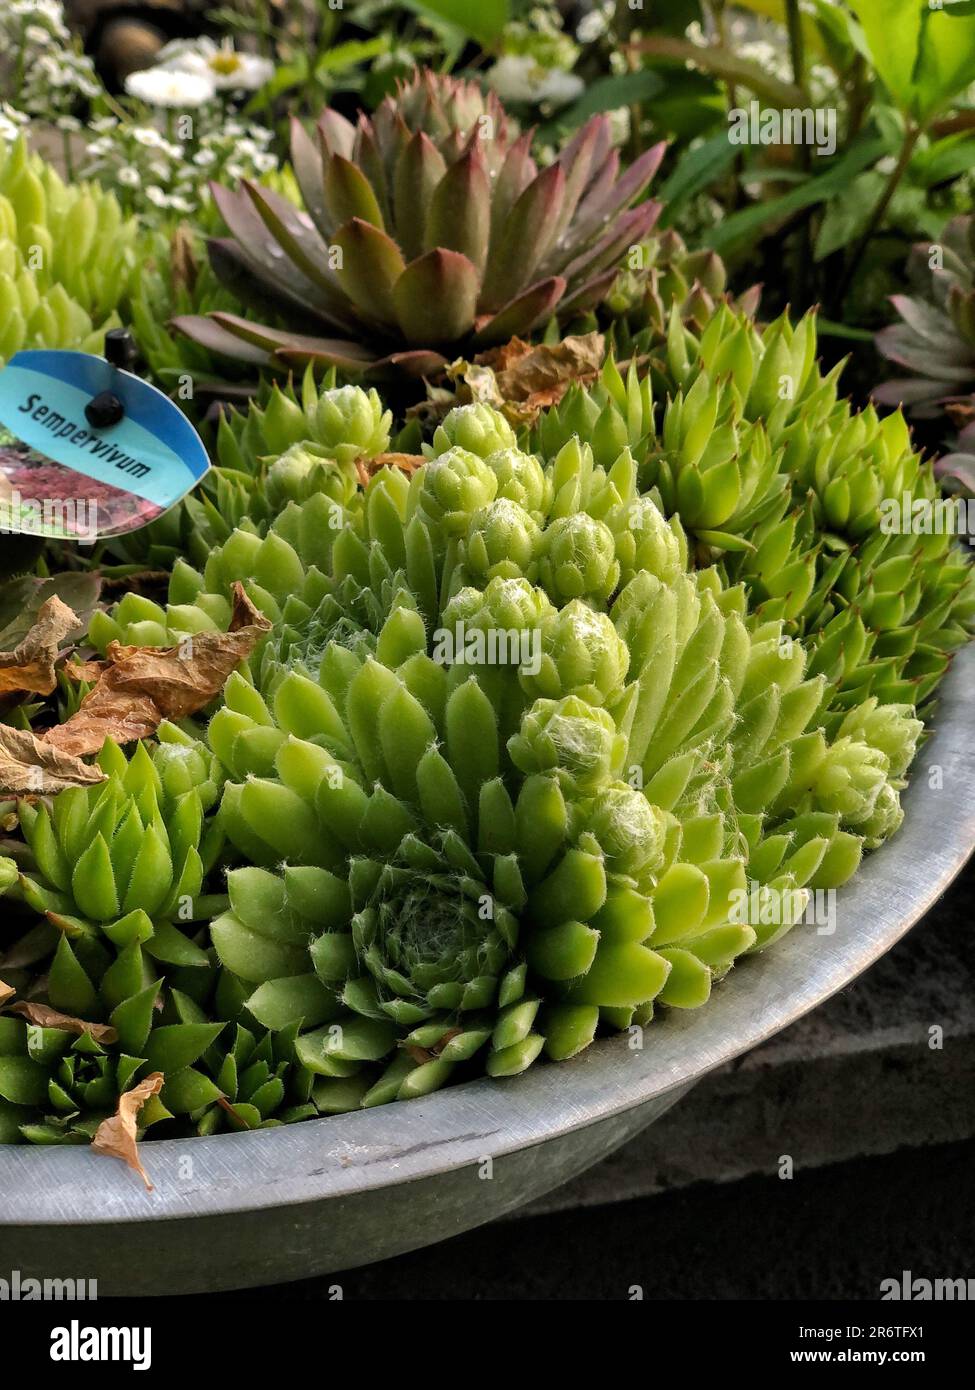 Beautiful succulents sempervivum in a concrete pot. Flower shop Stock Photo